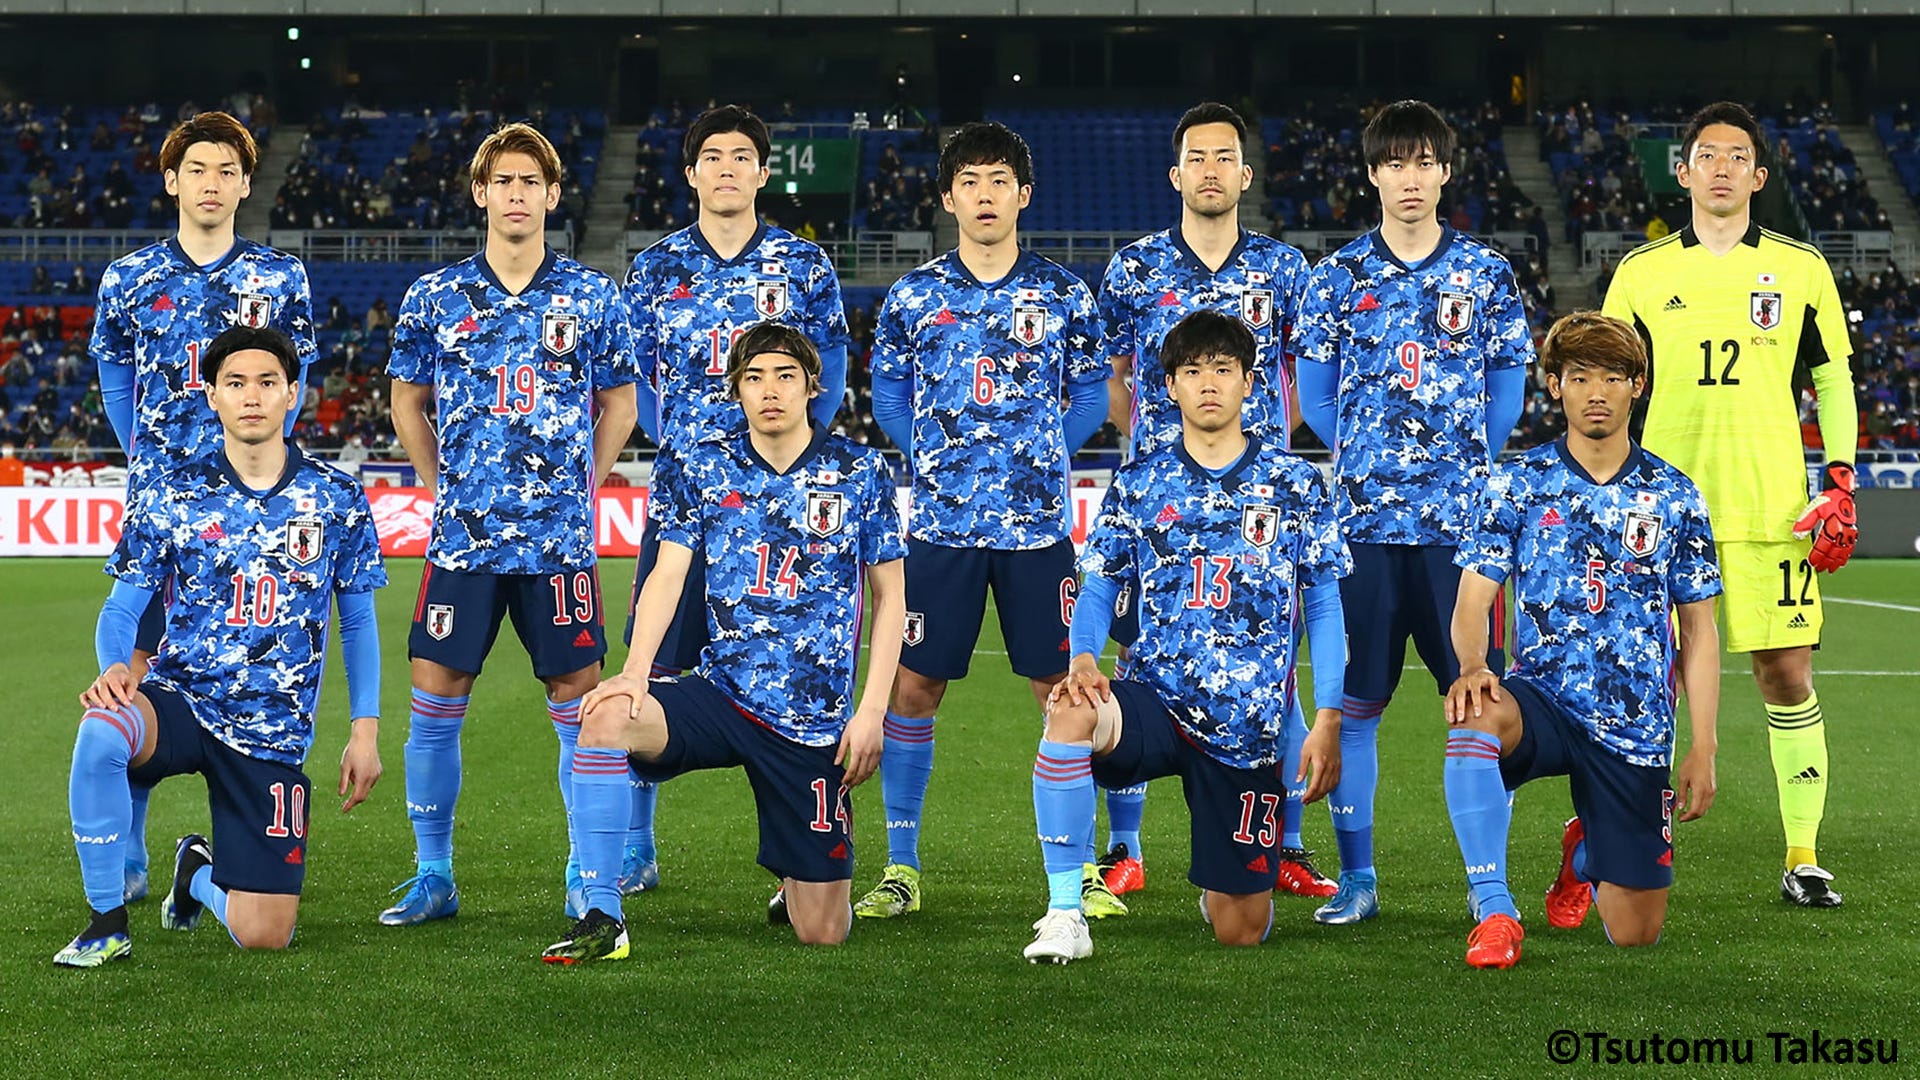 日本代表 6月3日にジャマイカ戦 11日にセルビア戦開催決定 5月末から6月までaマッチ5試合実施へ Goal Com 日本